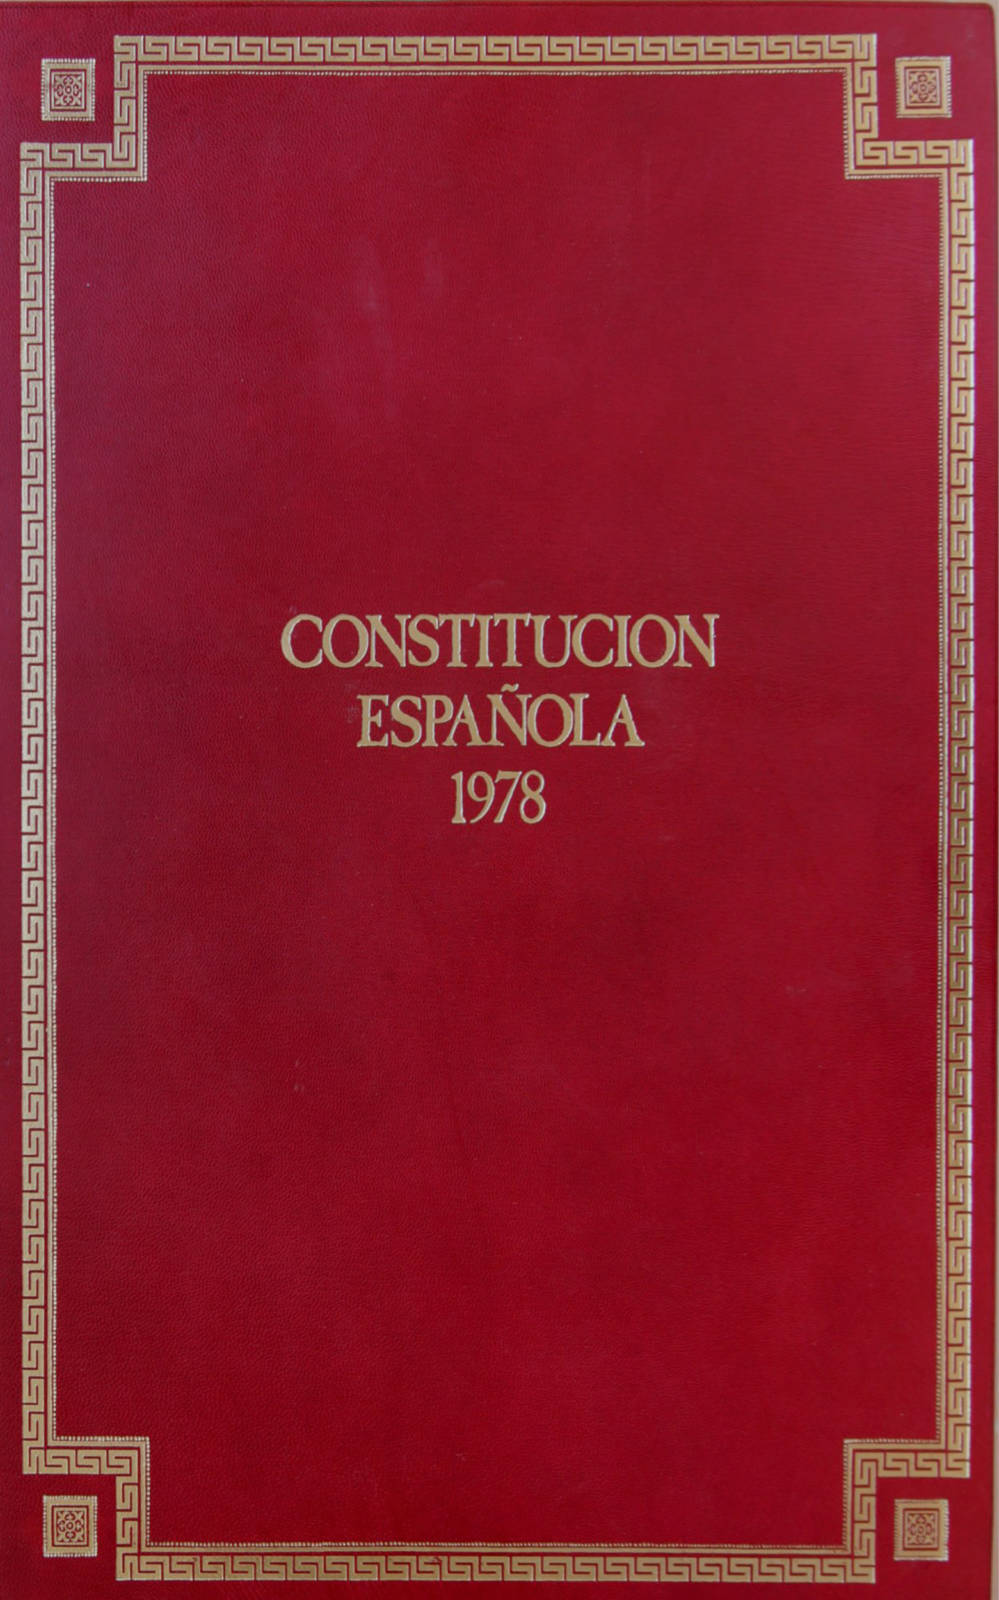 En este momento estás viendo LECTURA DE LA CONSTITUCIÓN ESPAÑOLA DE 1978